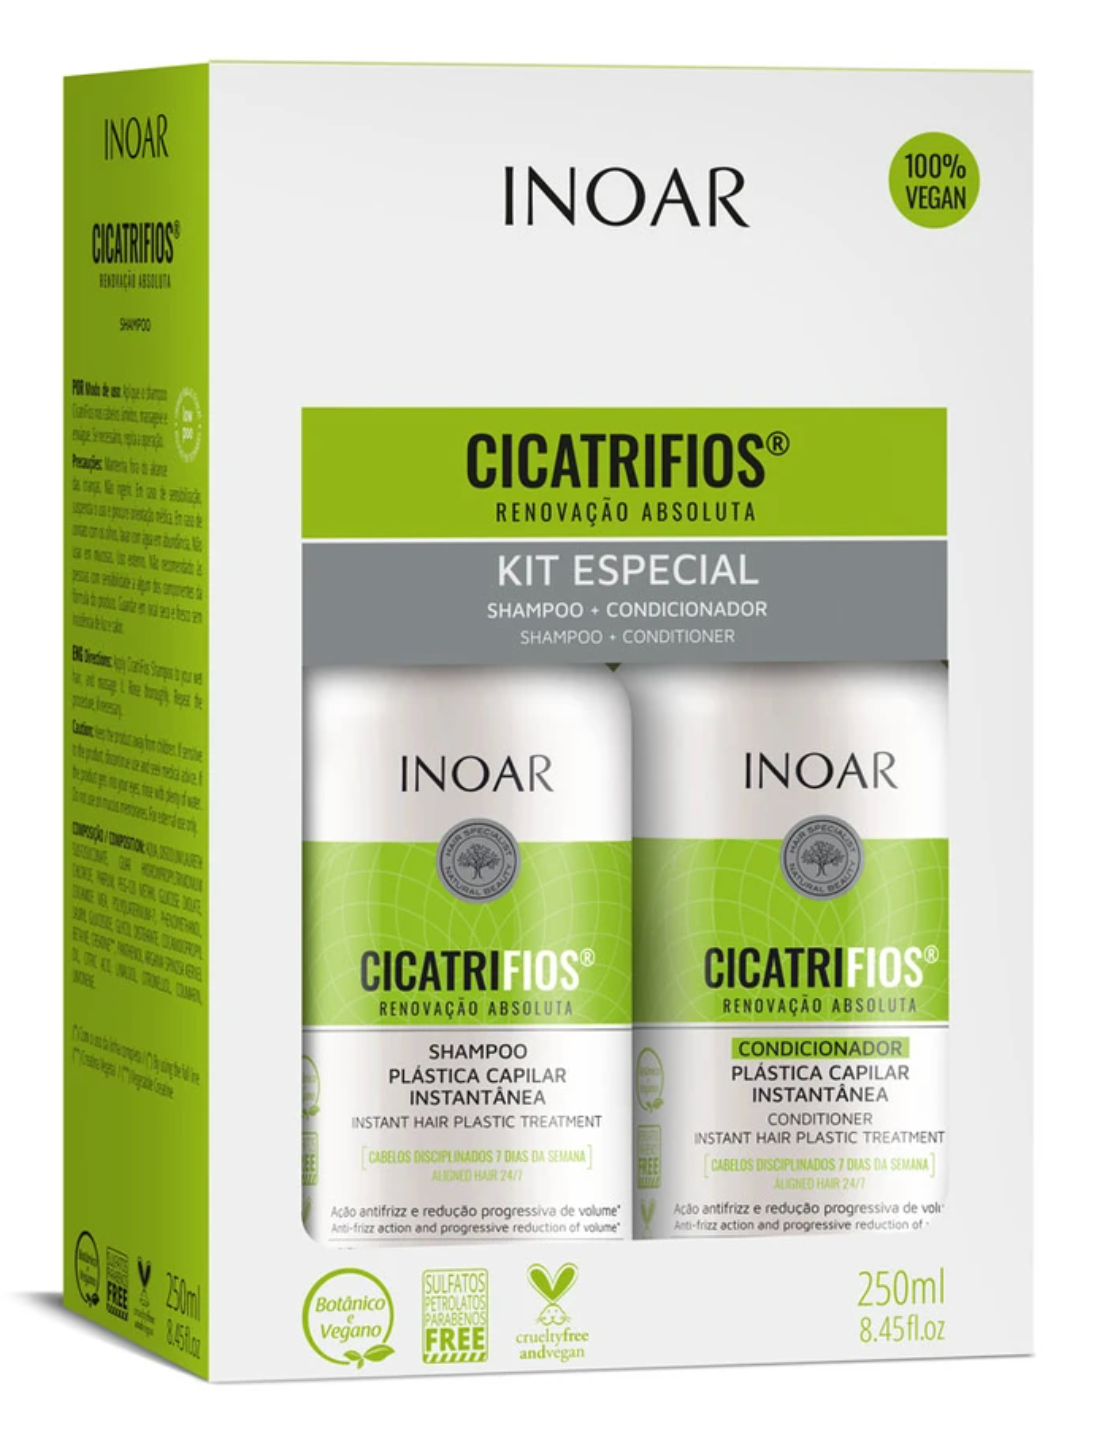 INOAR (Shampoo & Conditioner) CicatriFios